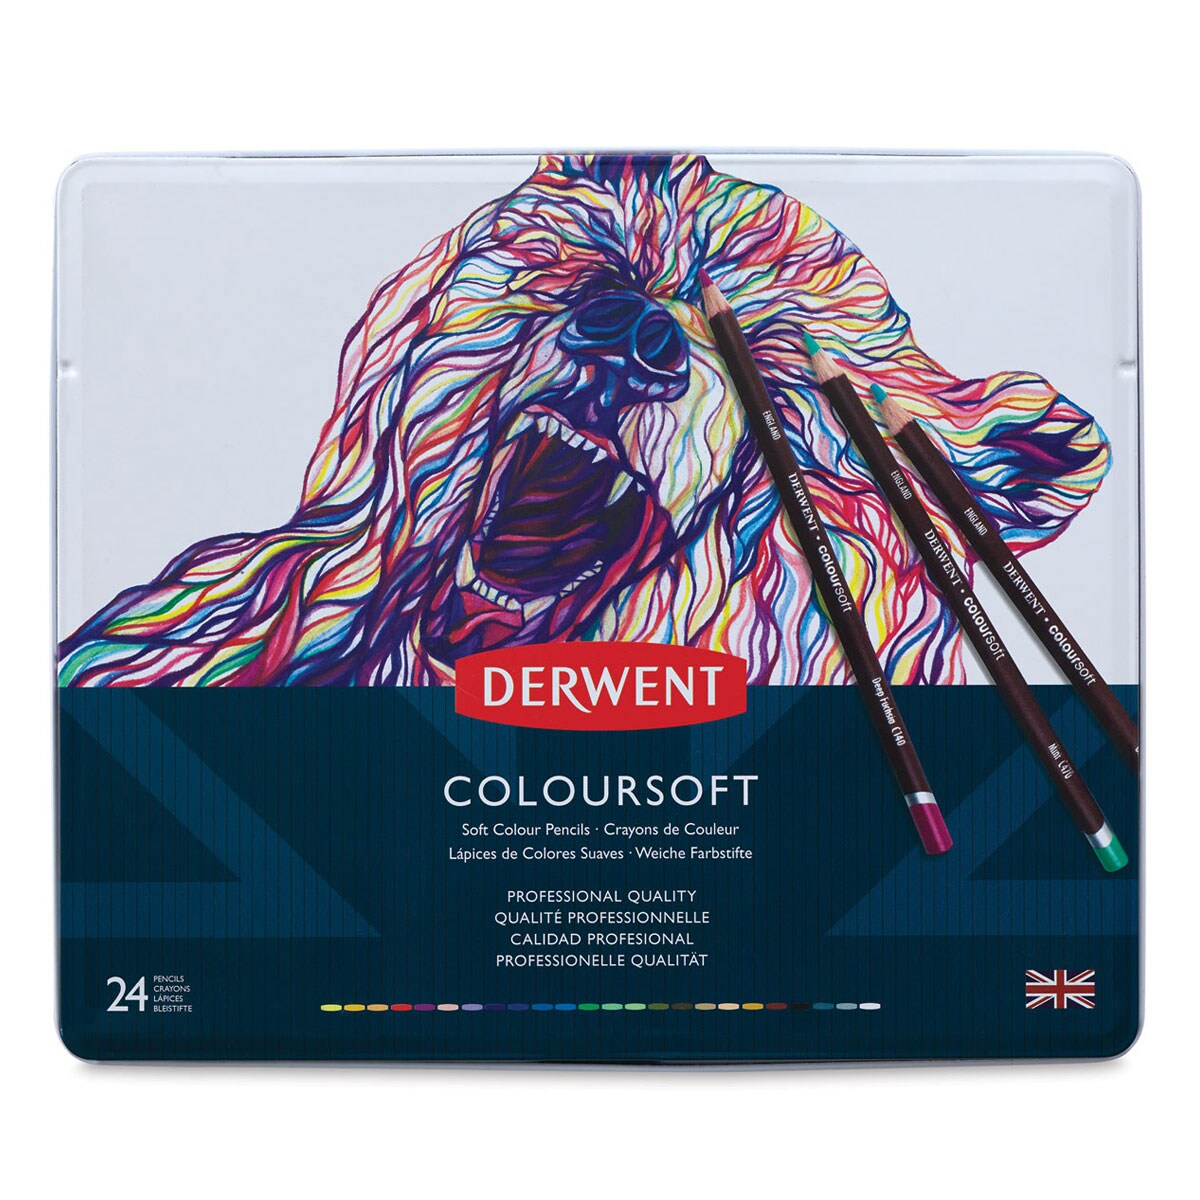 Derwent Coloursoft Pencil Set - Assorted Colors, Set of 24